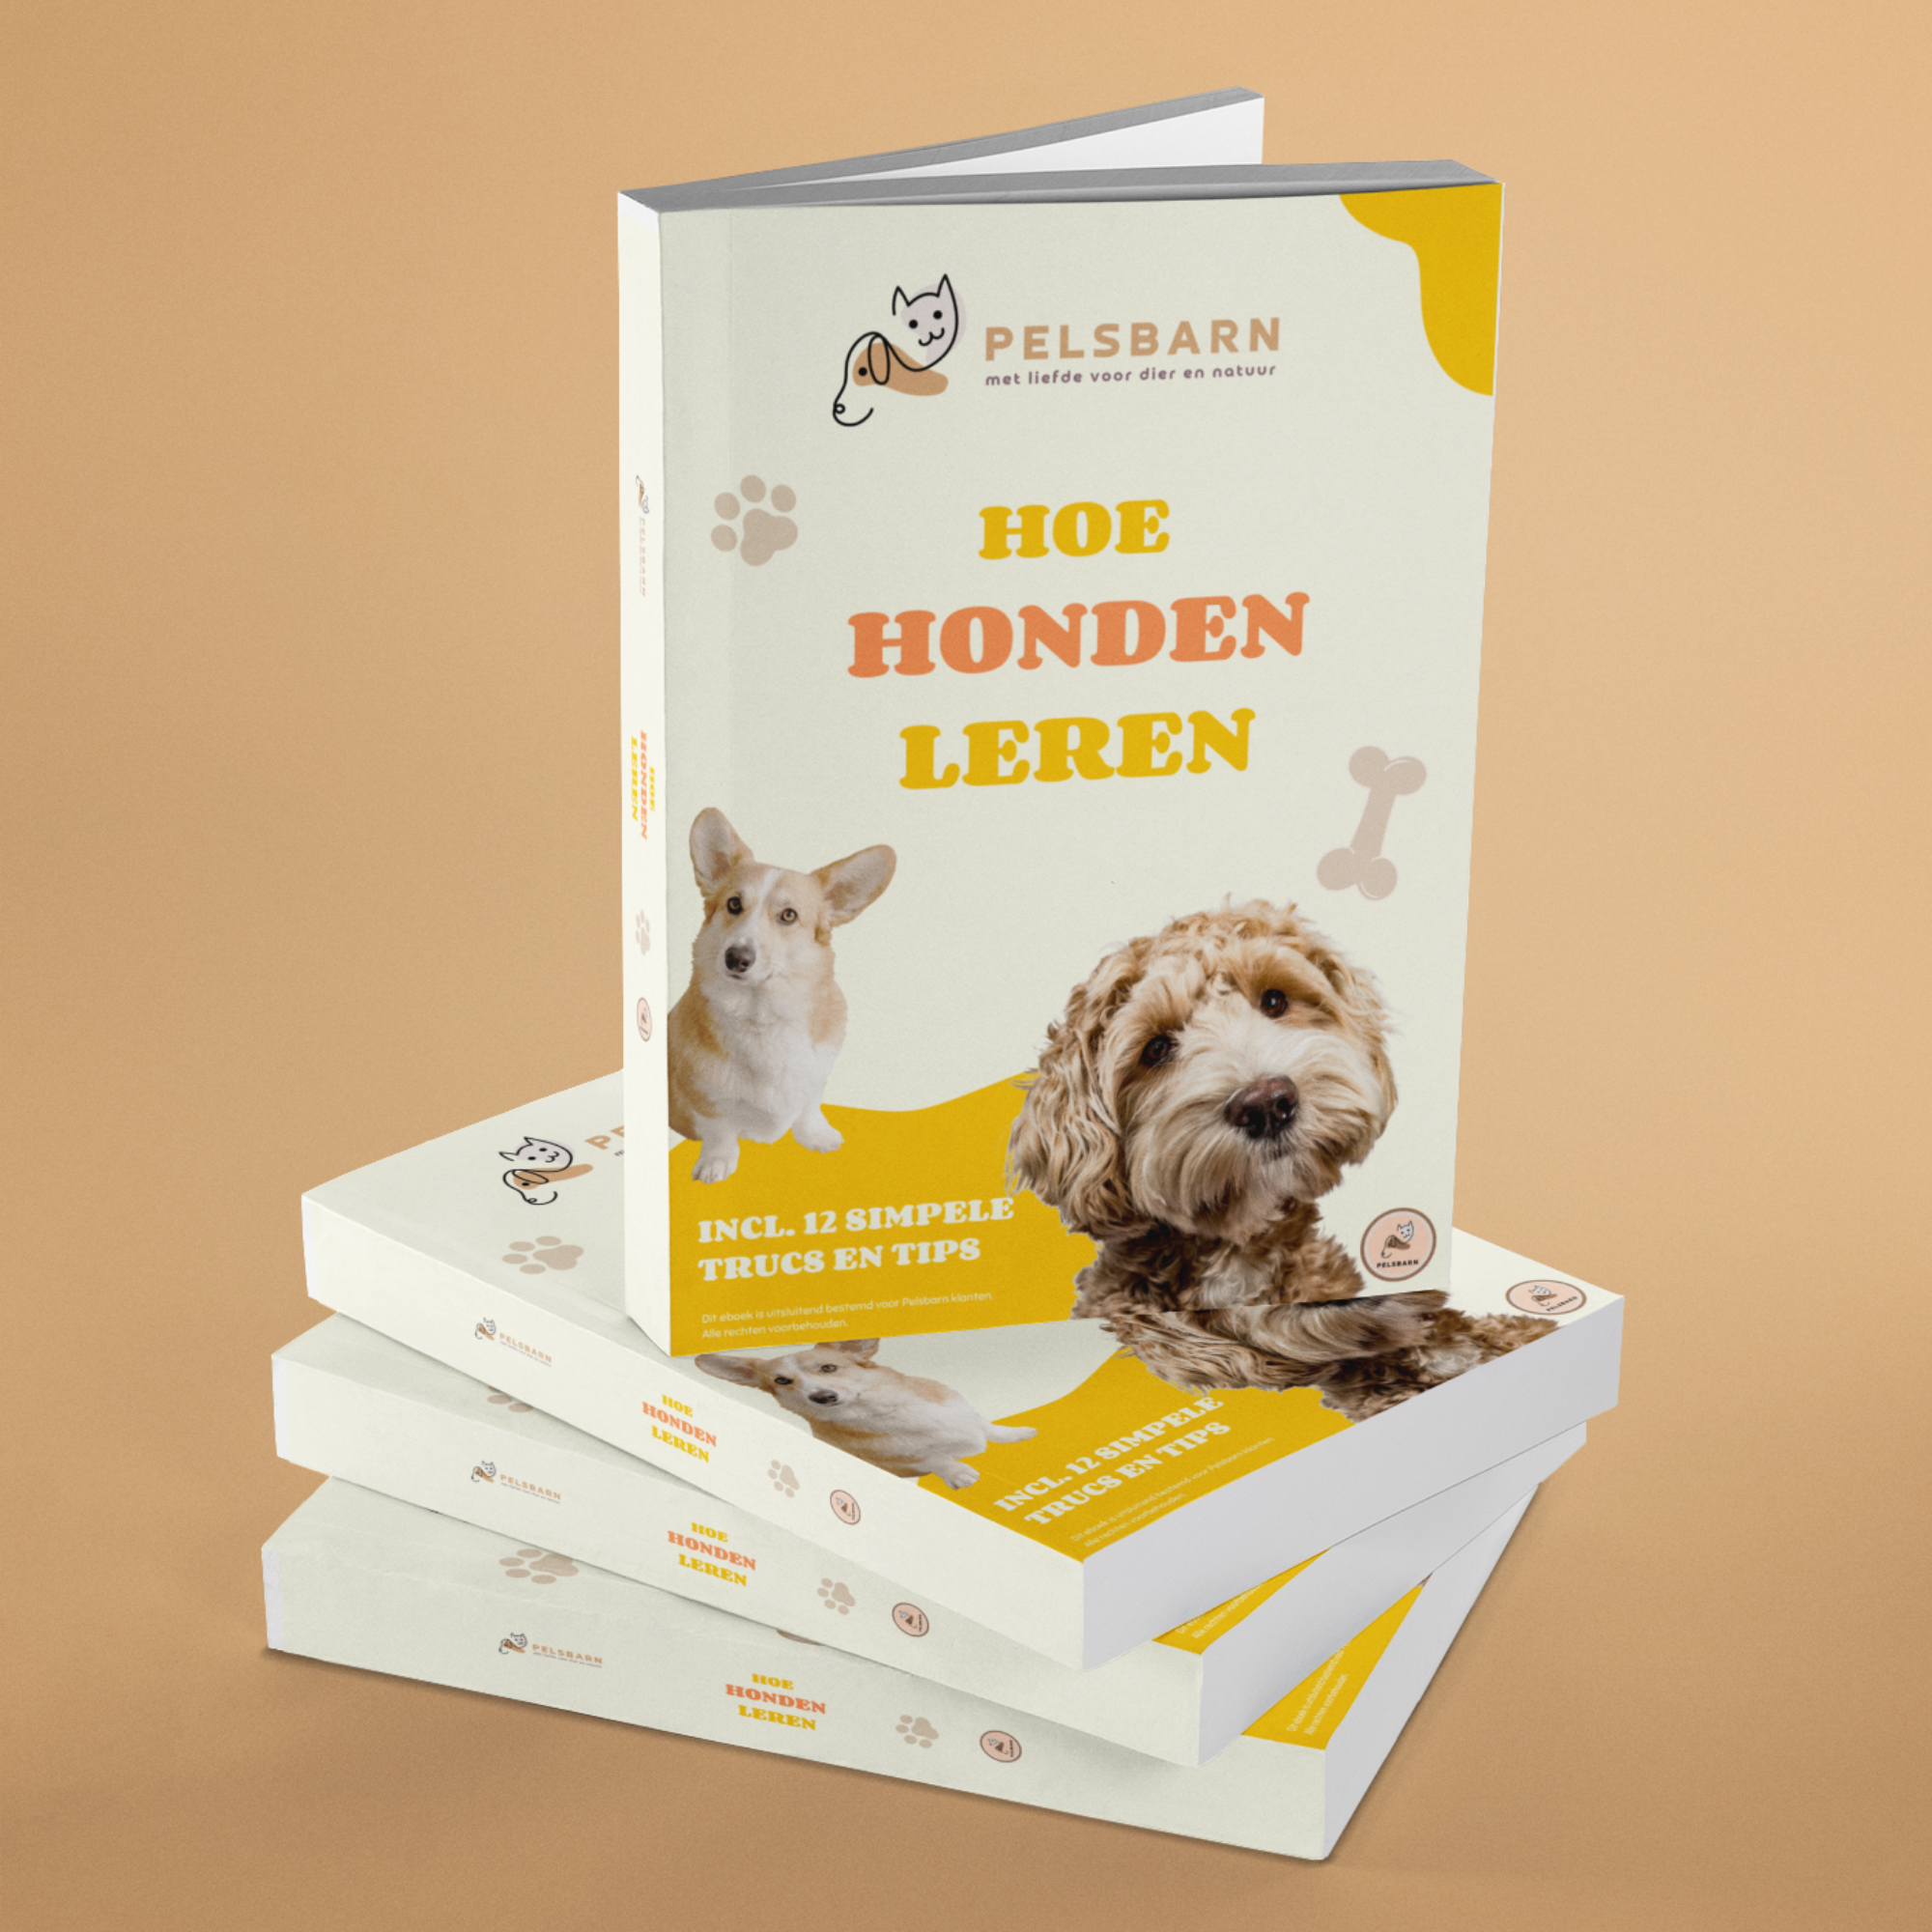 Hondenboek: hoe leren honden